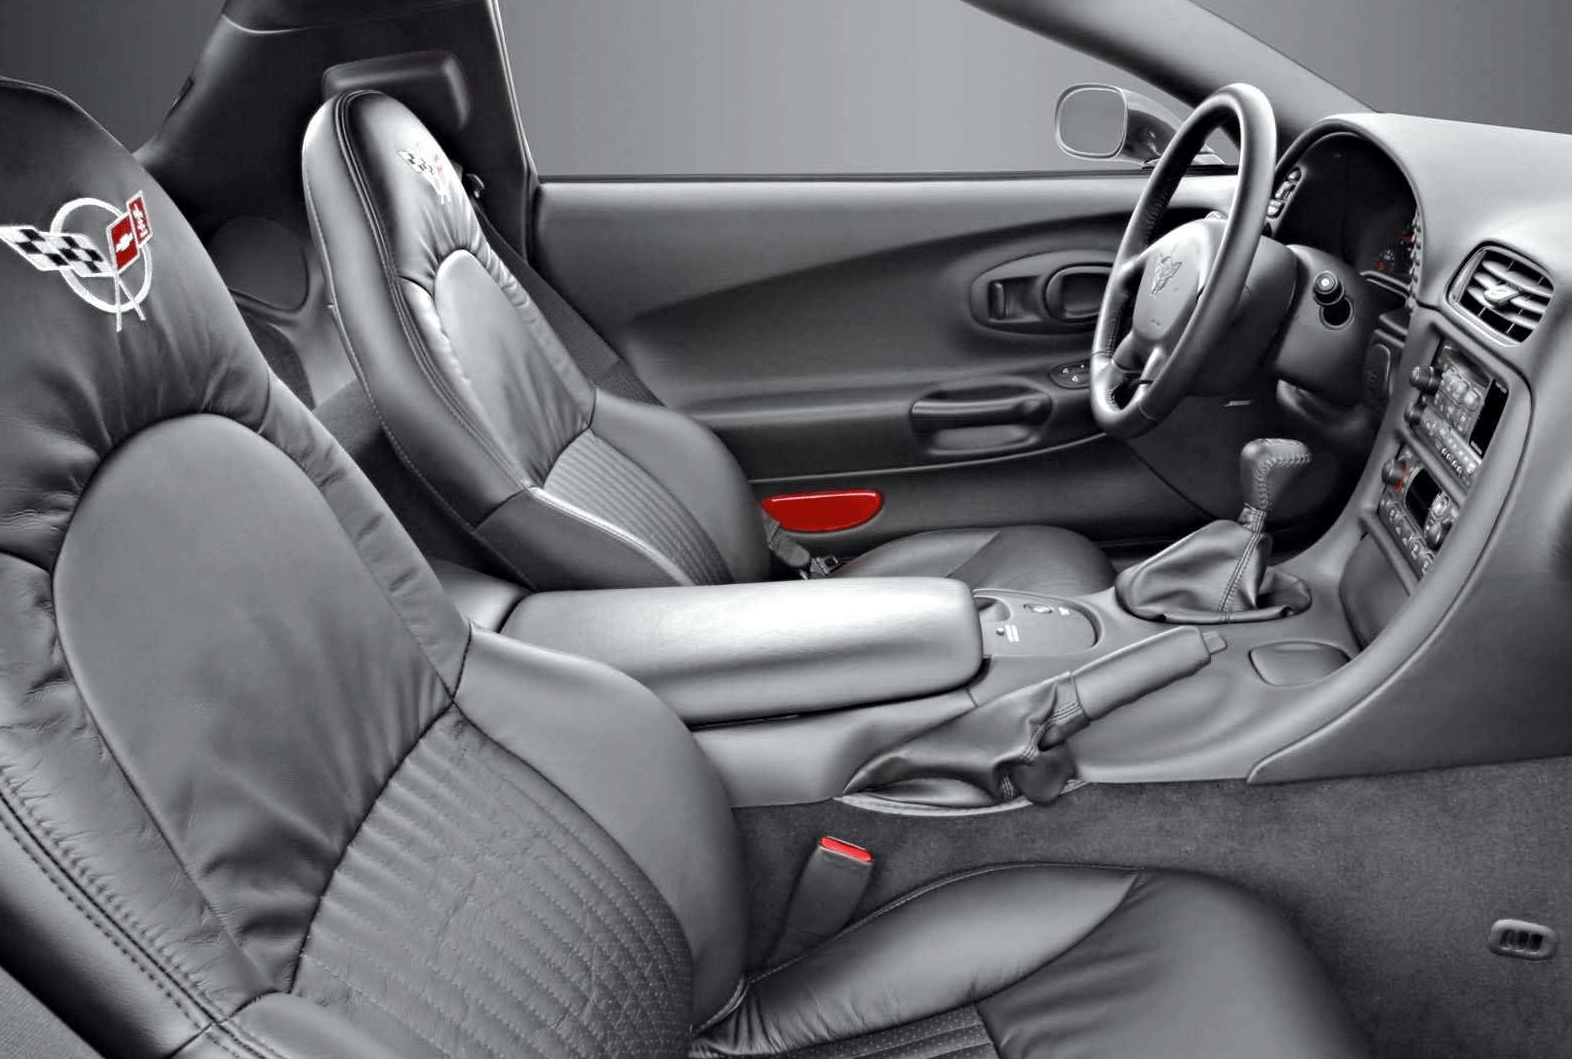 2004 Corvette Interior